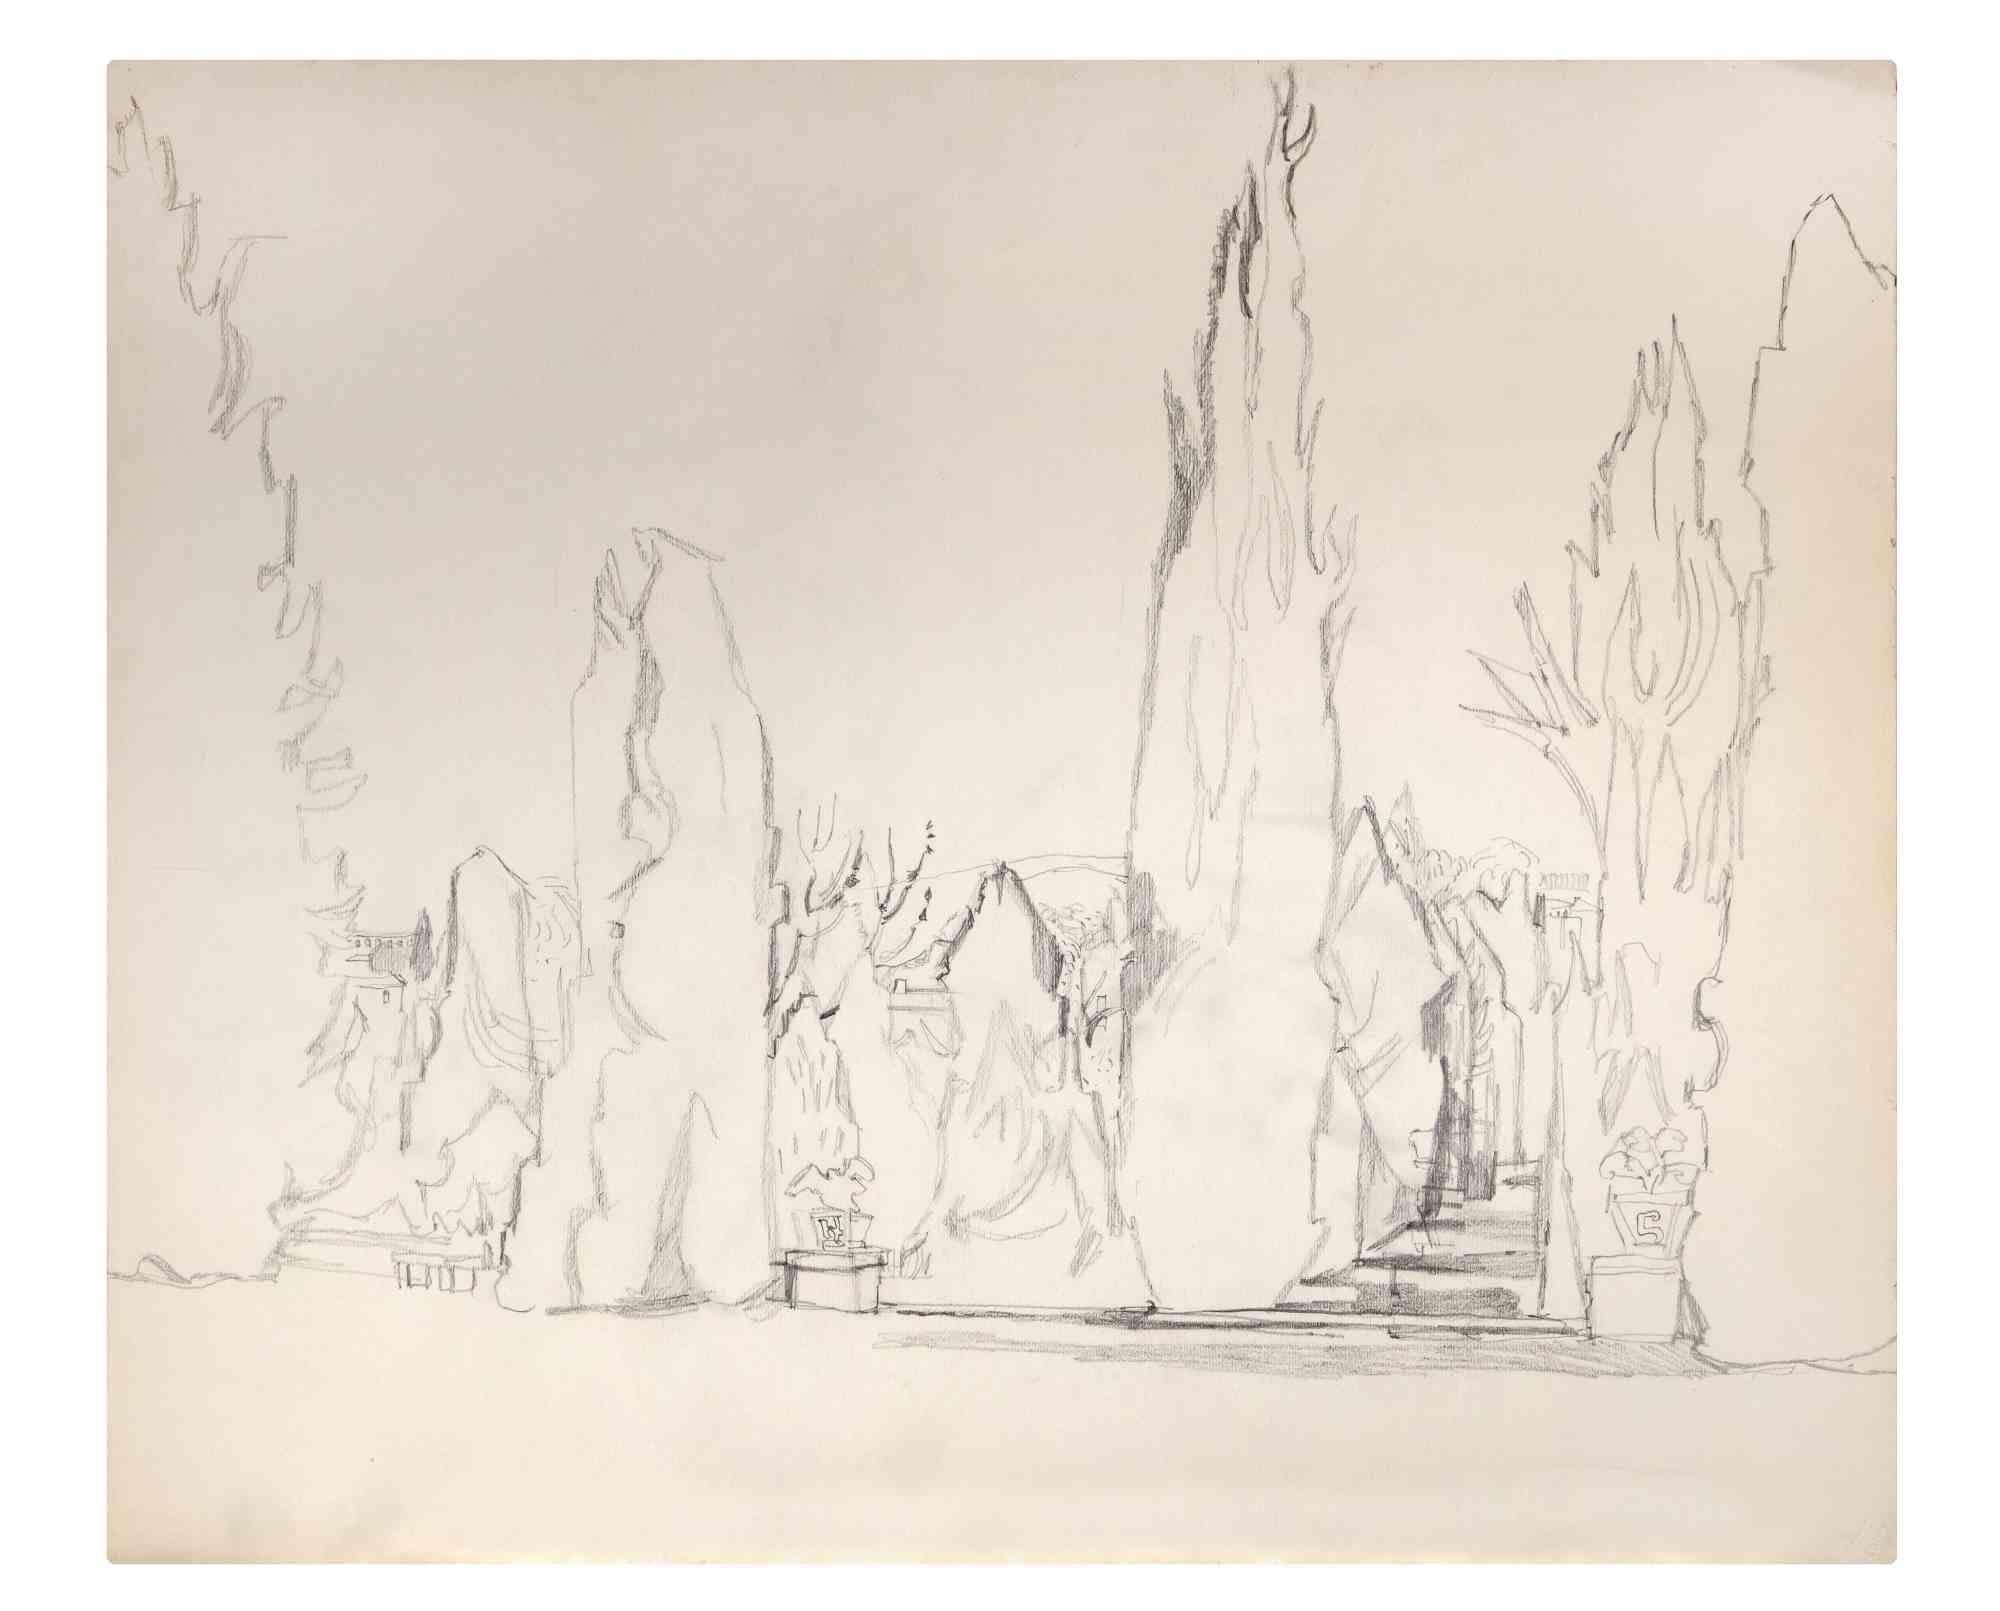 Paysage est un dessin au crayon réalisé par Reynold Arnould (Le Havre 1919 - Parigi 1980).

Bon état sur un papier jauni.

Pas de signature.

Reynold Arnould est né au Havre, en France, en 1919. Il a étudié à l'École des Beaux-Arts du Havre, et a